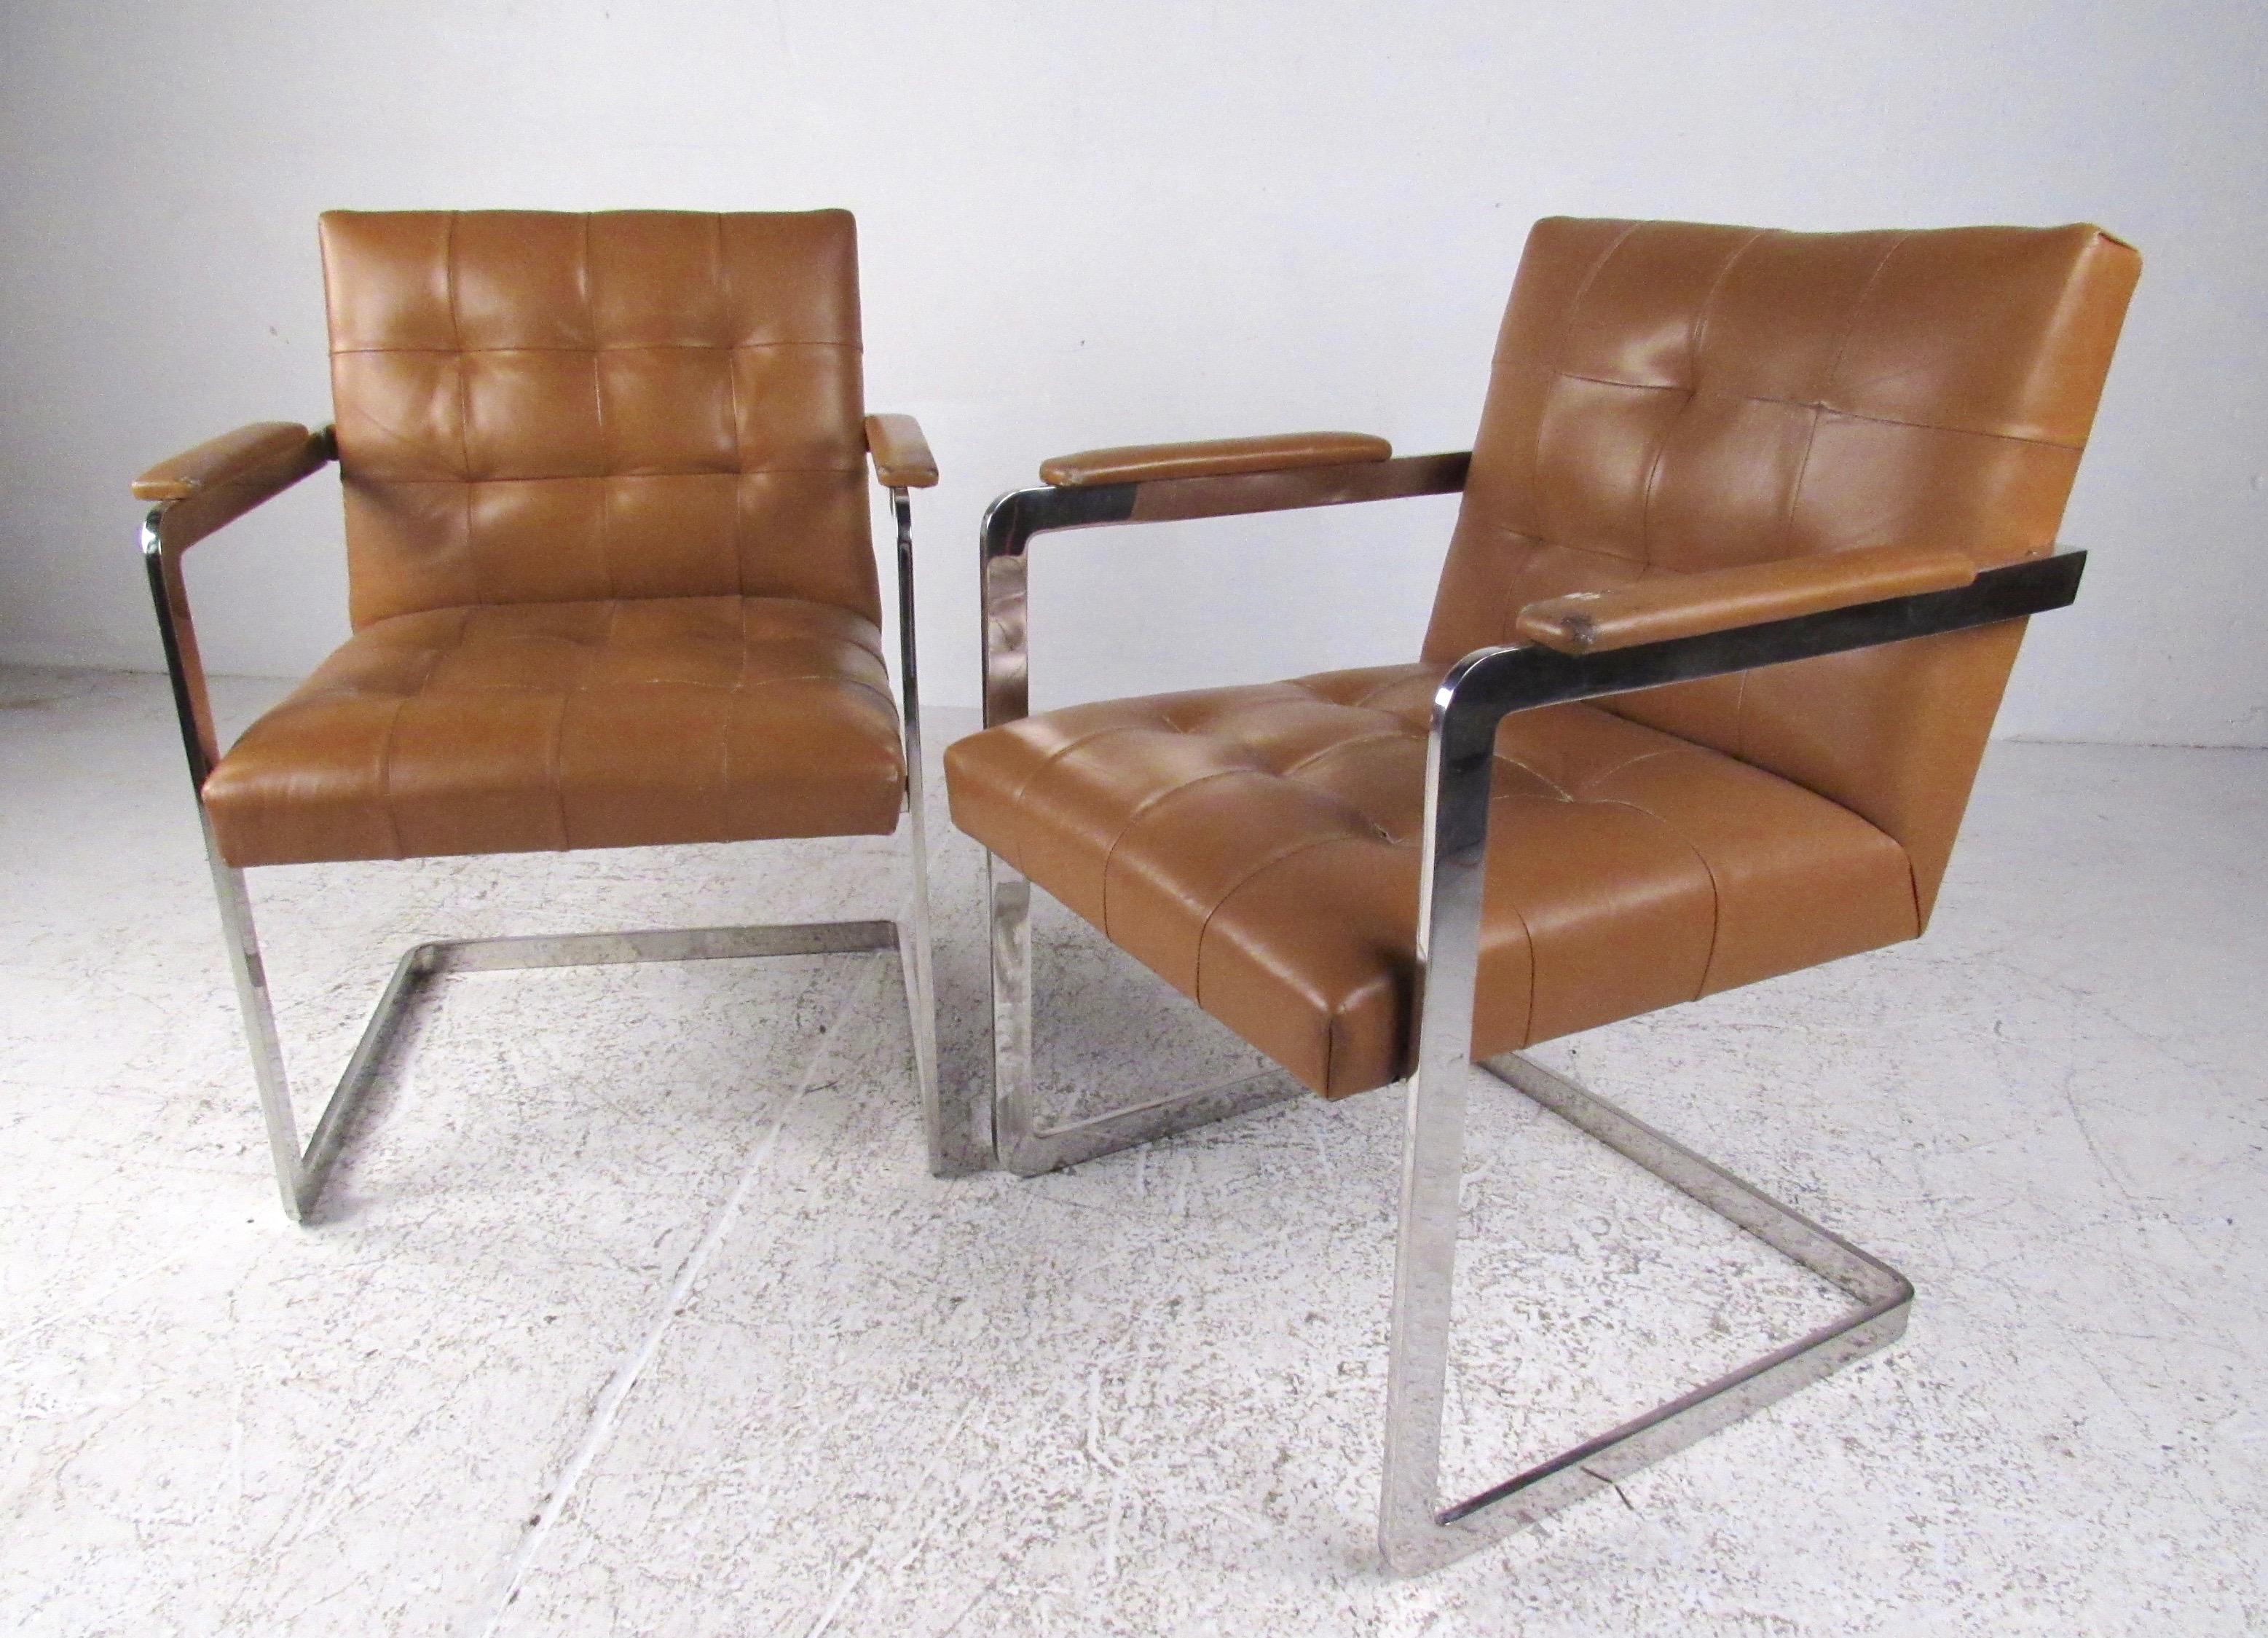 Dieses stilvolle Paar moderner Sessel im Vintage-Stil verfügt über getuftete Ledersitze und schwere flache Chromrahmen. Der Midcentury-Appeal im Stil von Milo Baughman ist eine auffällige Sitzgelegenheit für Wohn- und Büroräume. Bitte bestätigen Sie